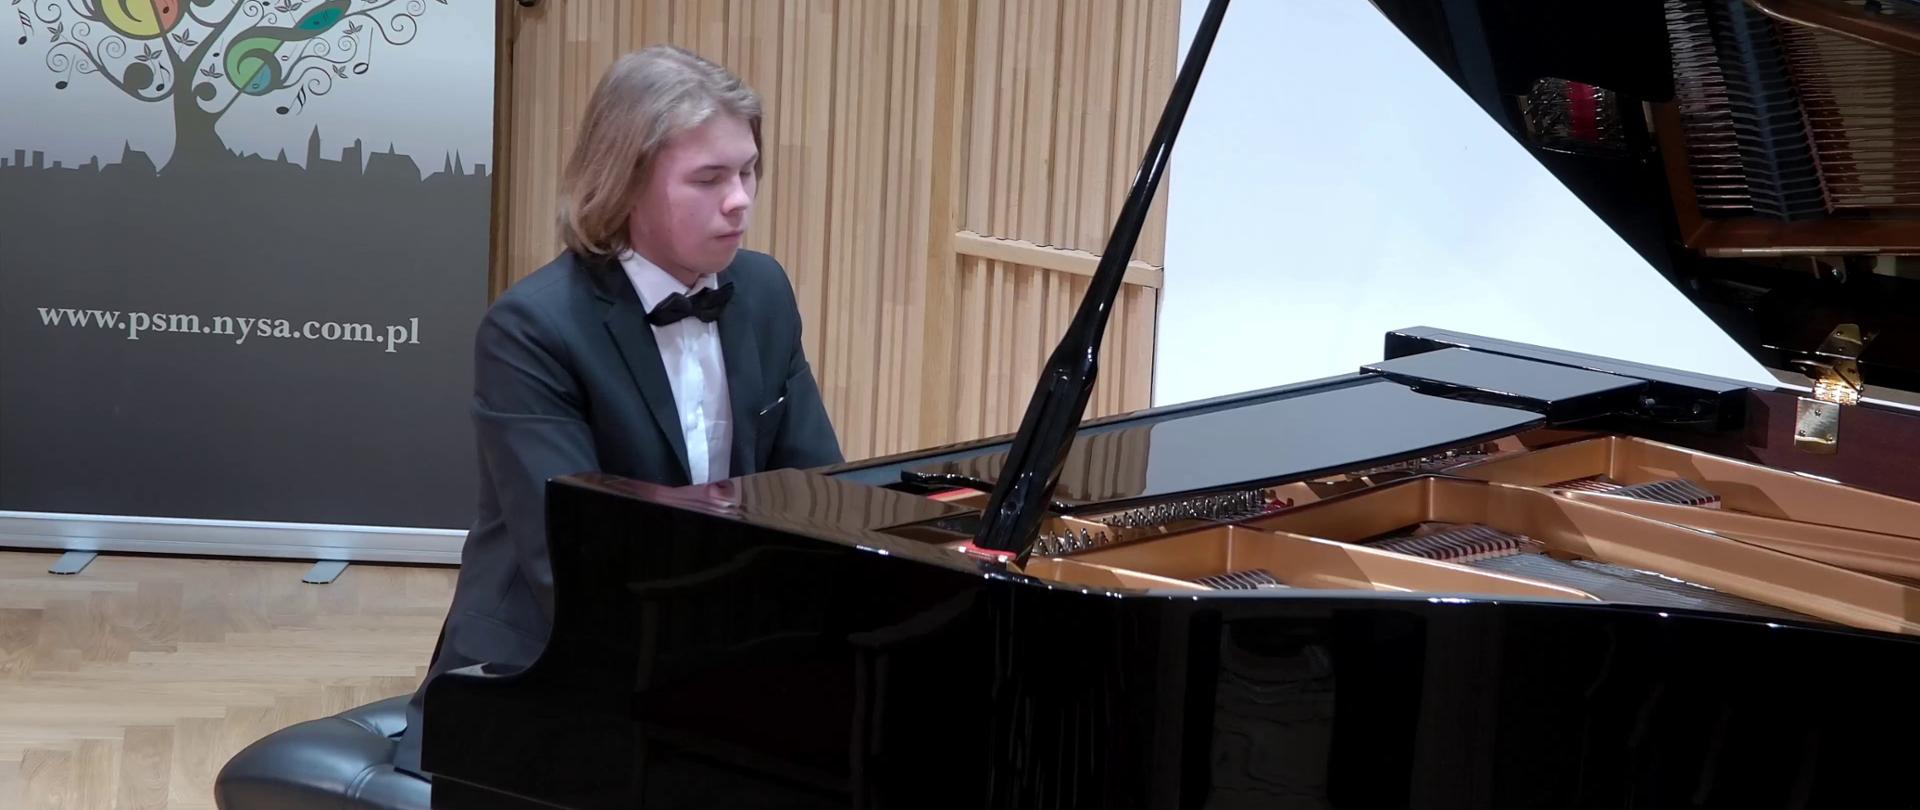 Zdjęcie. Młody pianista gra na fortepianie podczas koncertu na estradzie sali koncertowej. W tle baner PSM Nysa.